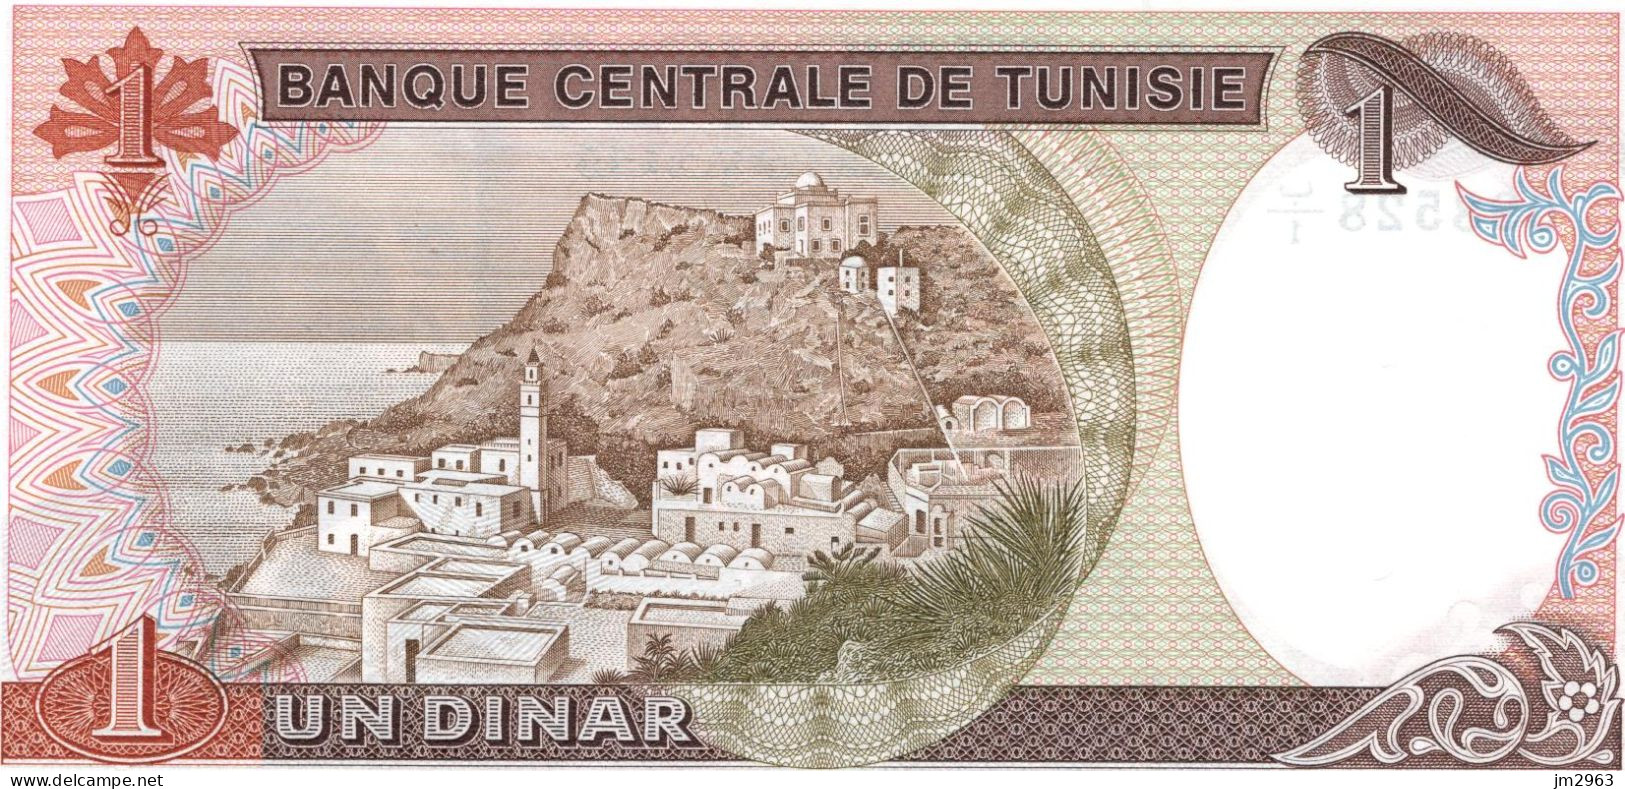 TUNISIE 1 DINAR 15.10.1980 UNC  B1/098528 - Tunisia